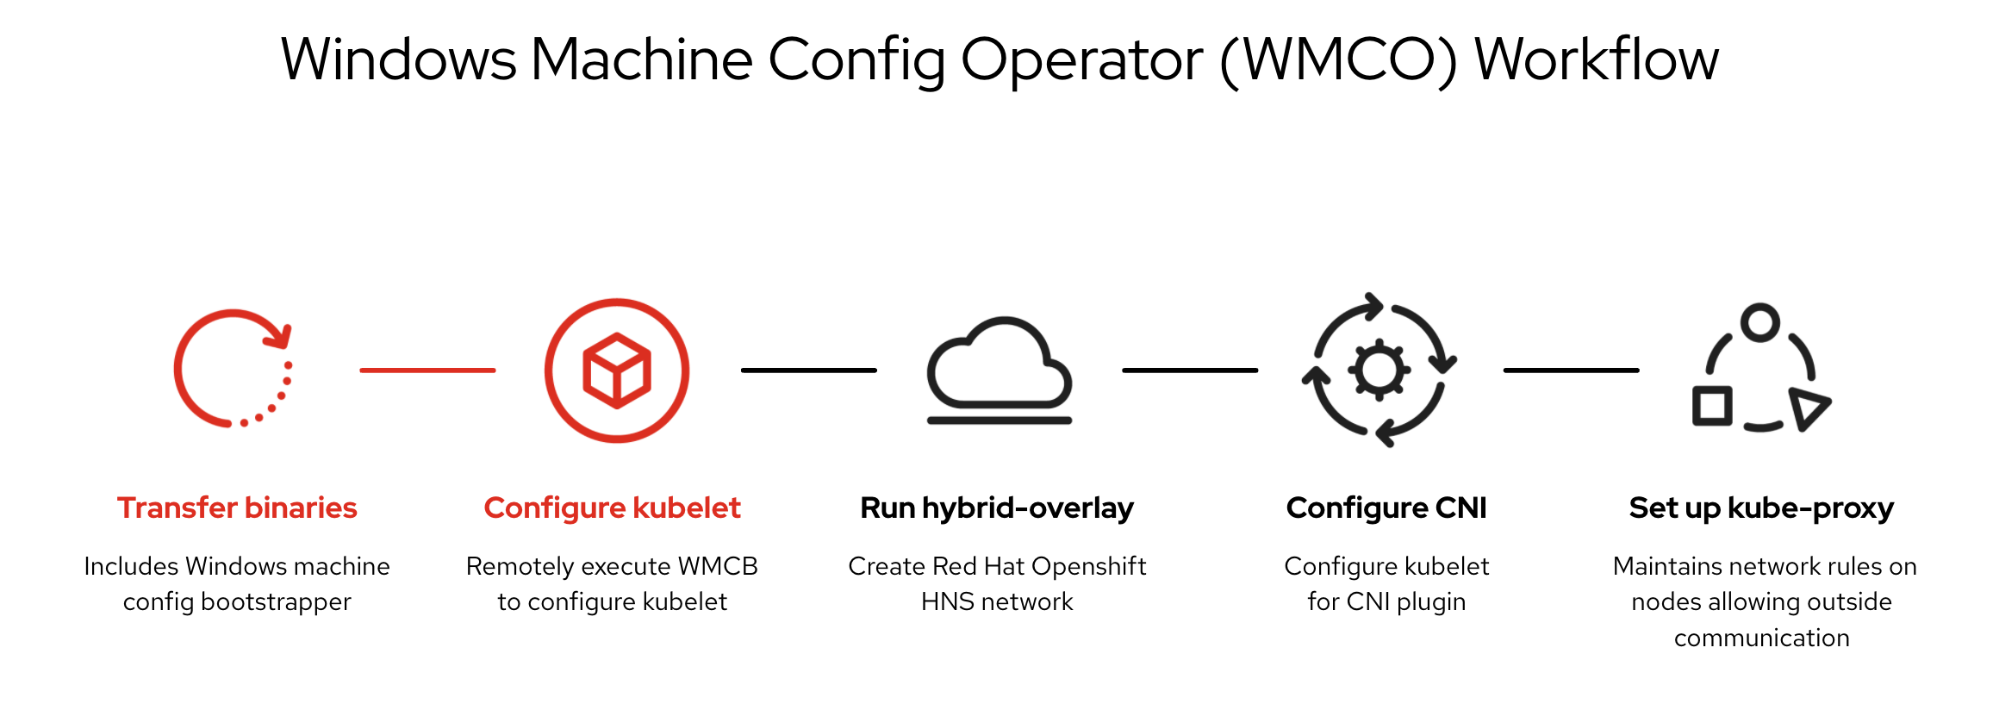 Windows Machine Config Operator Workflow